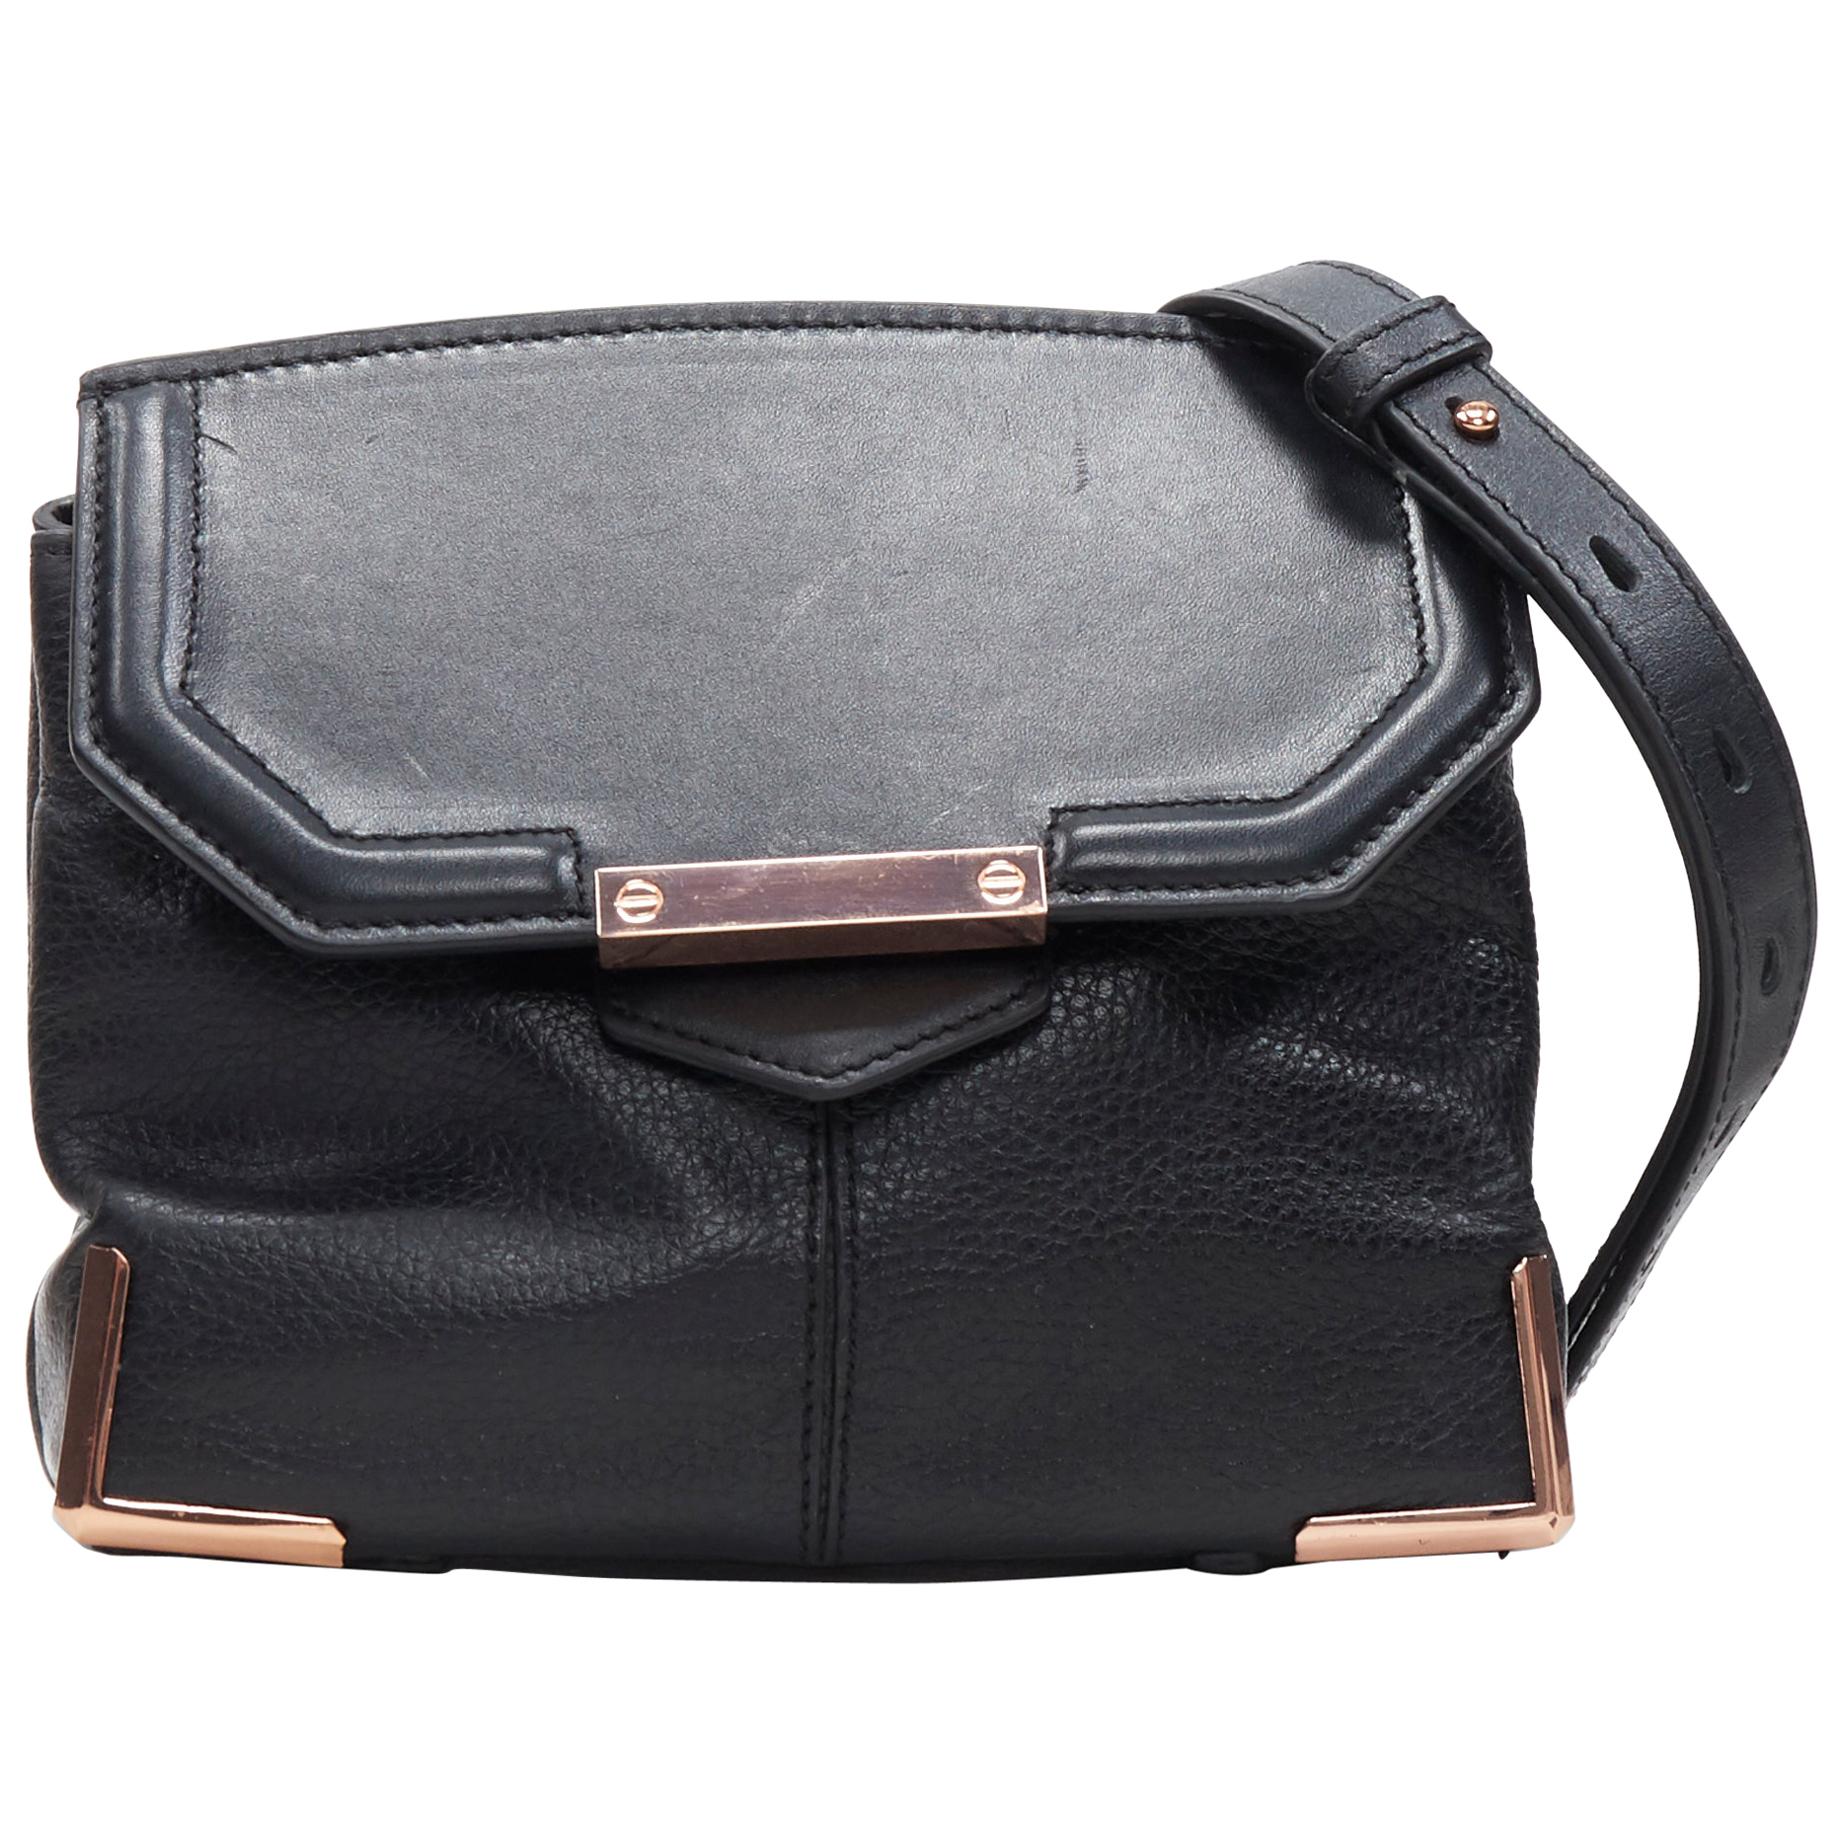 ALEXANDER WANG Prism black leather copper hardware flap shoulder bag